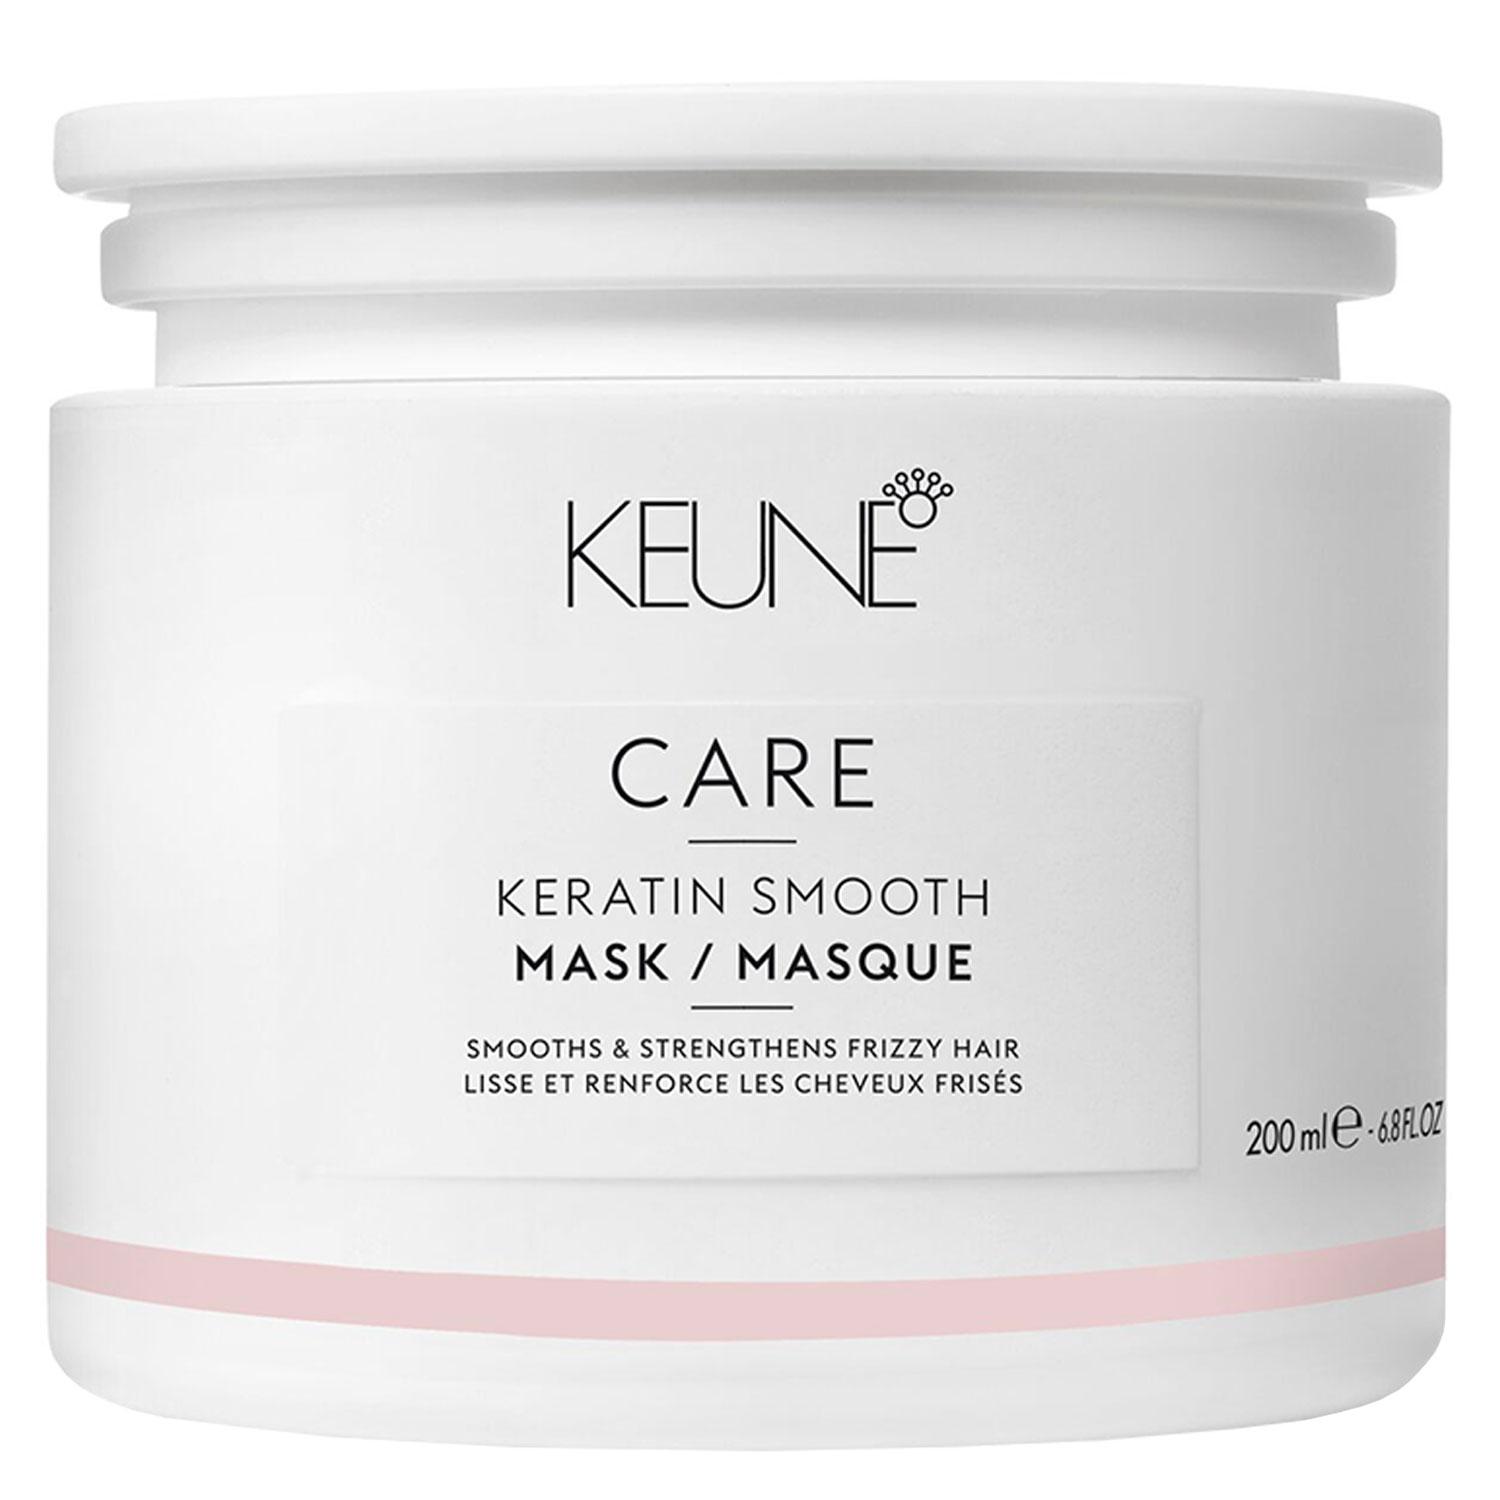 Keune Care - Keratin Smooth Mask